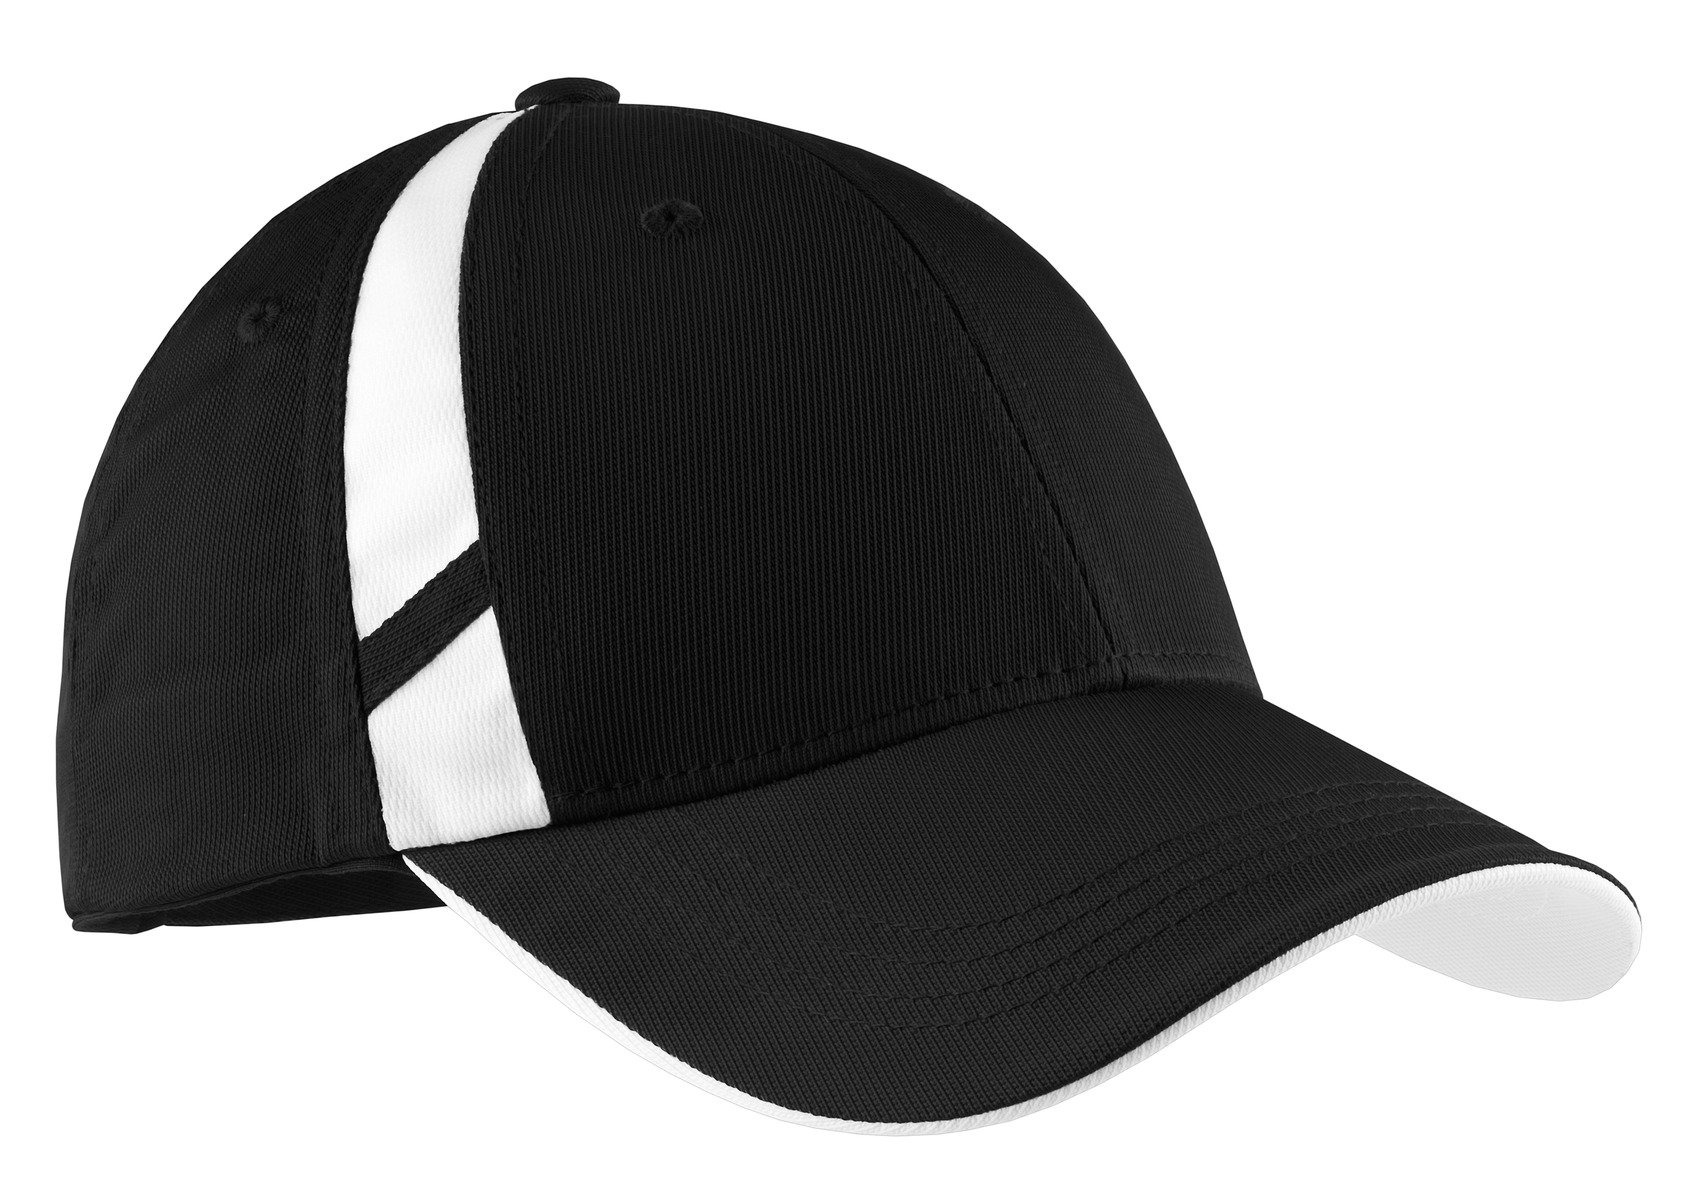 Sport-Tek Hospitality Caps ® Dry Zone® Mesh Inset Cap.-Sport-Tek